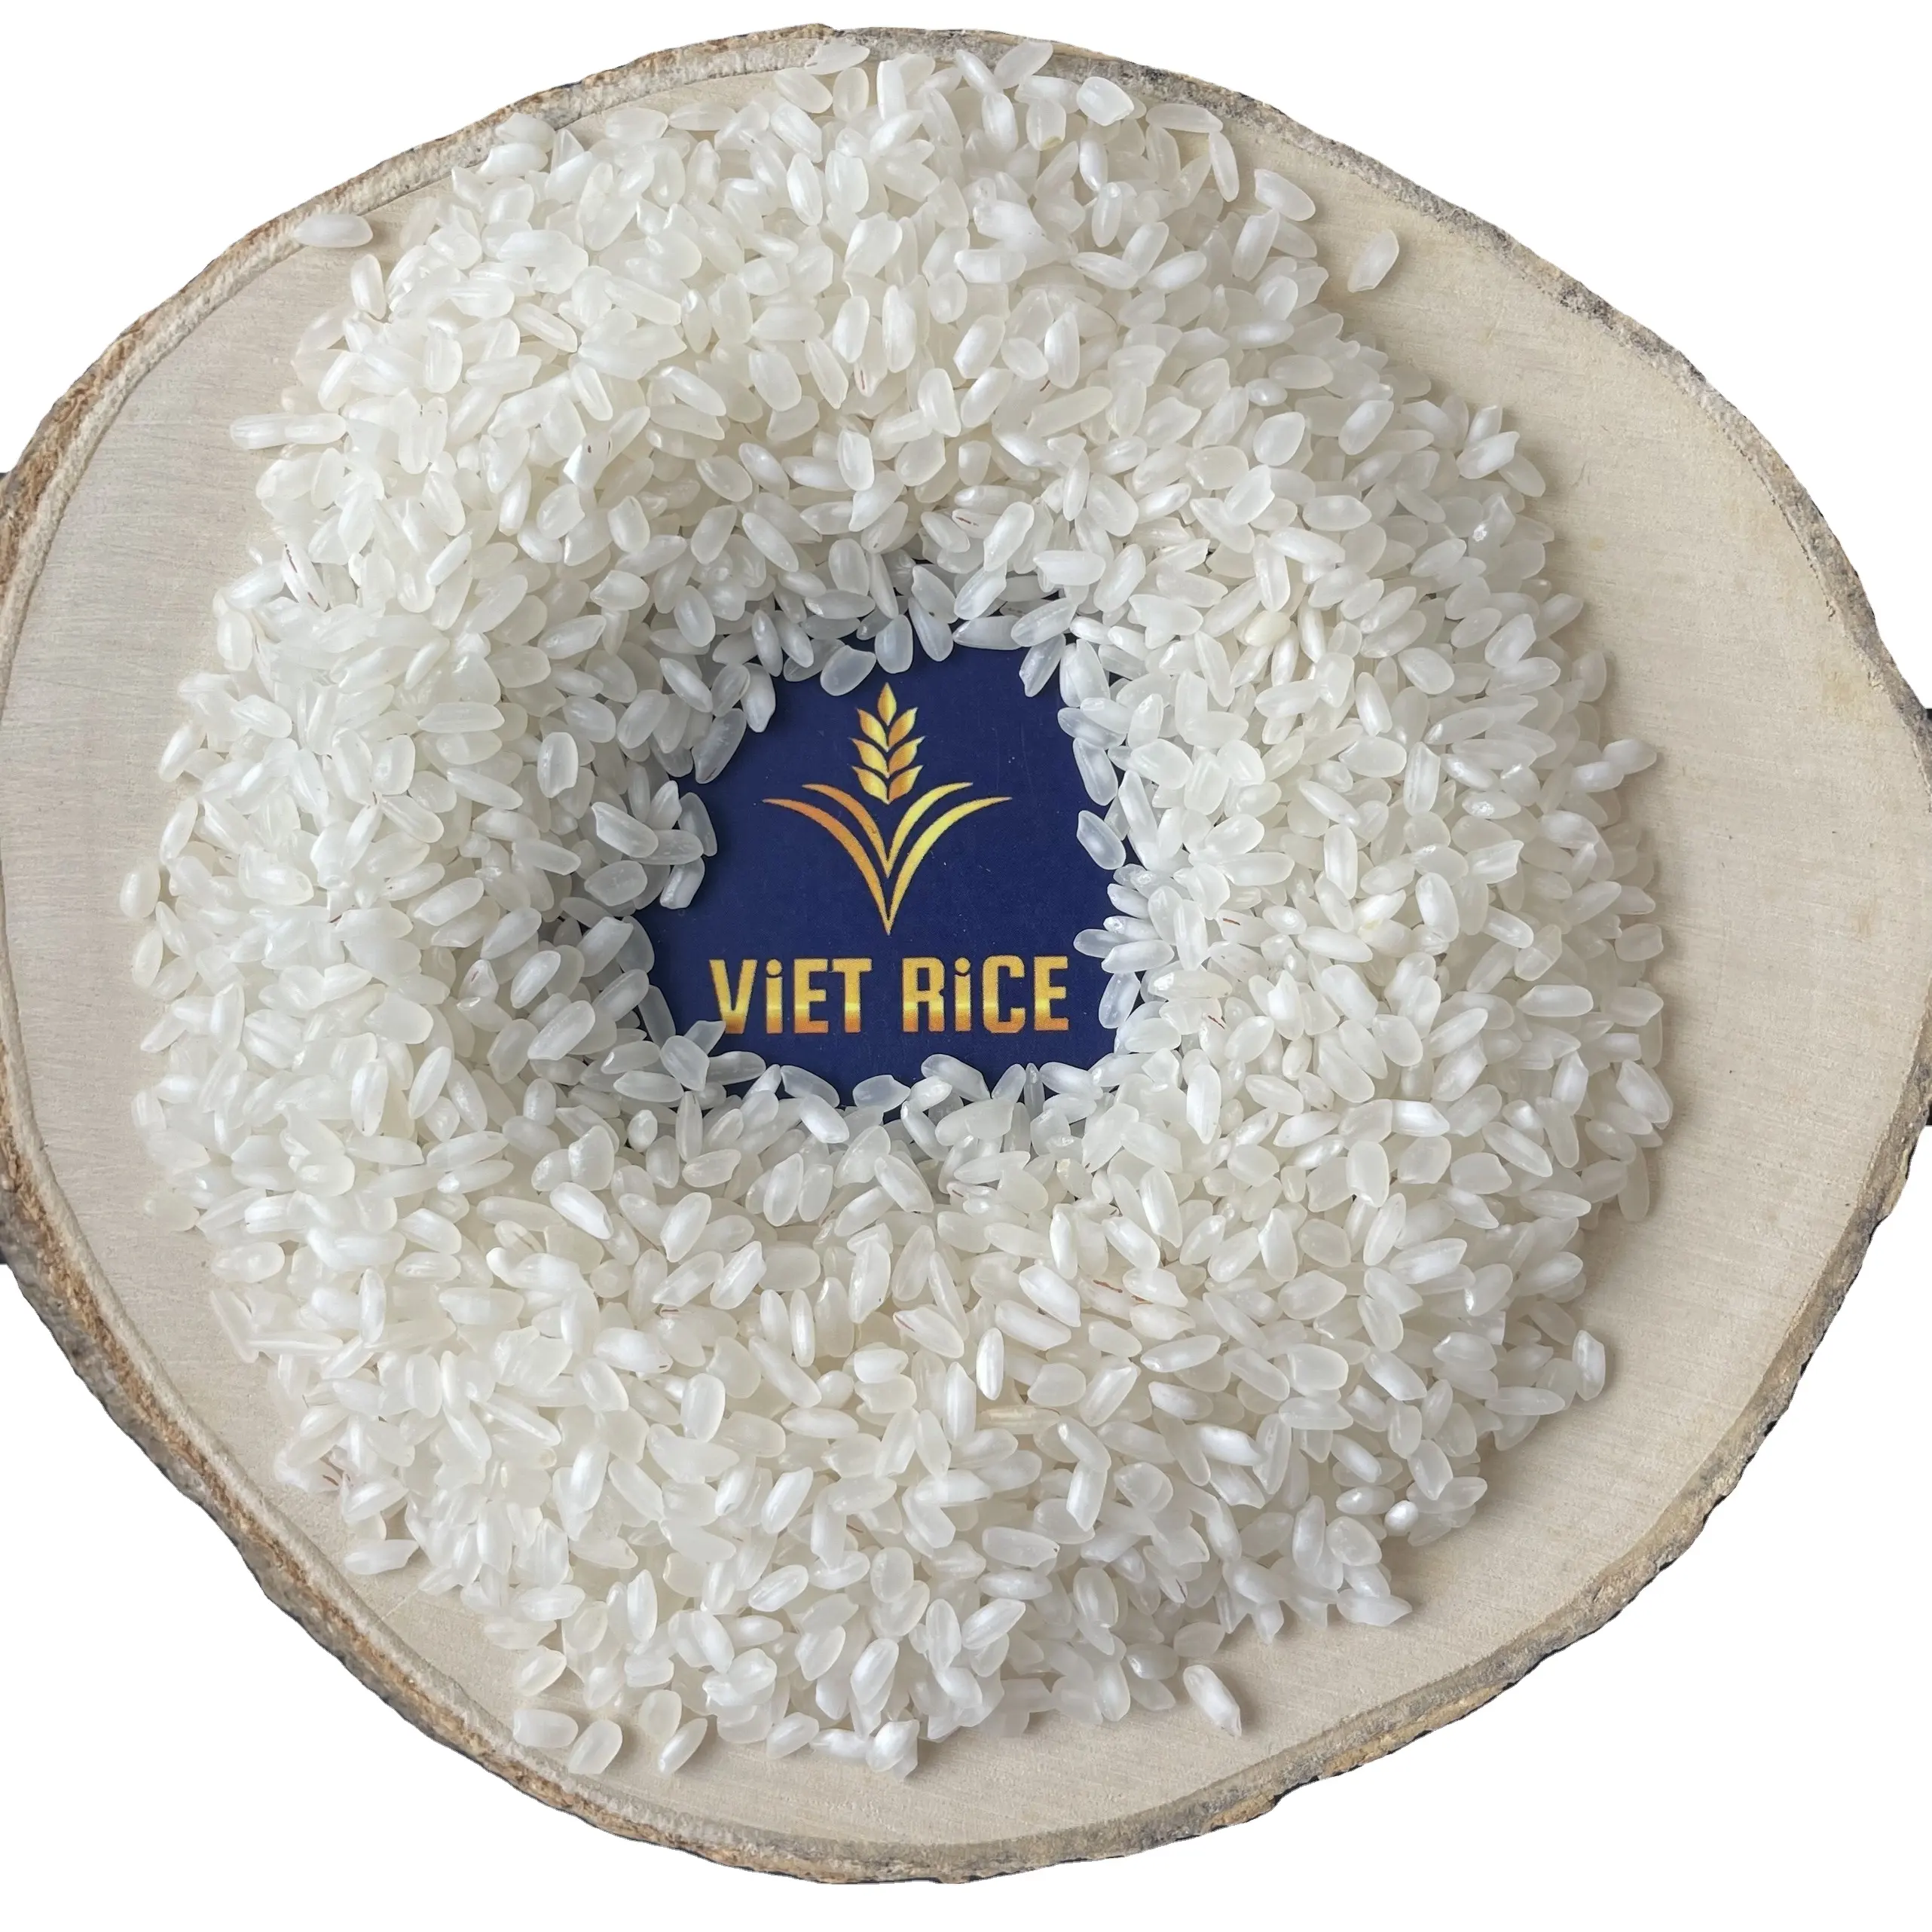 Премиум Средний зерновой белый рис-лучший продавец на рынке риса в странах Ближнего Востока-калроуз Риз 5%, сломанный из Вьетнама